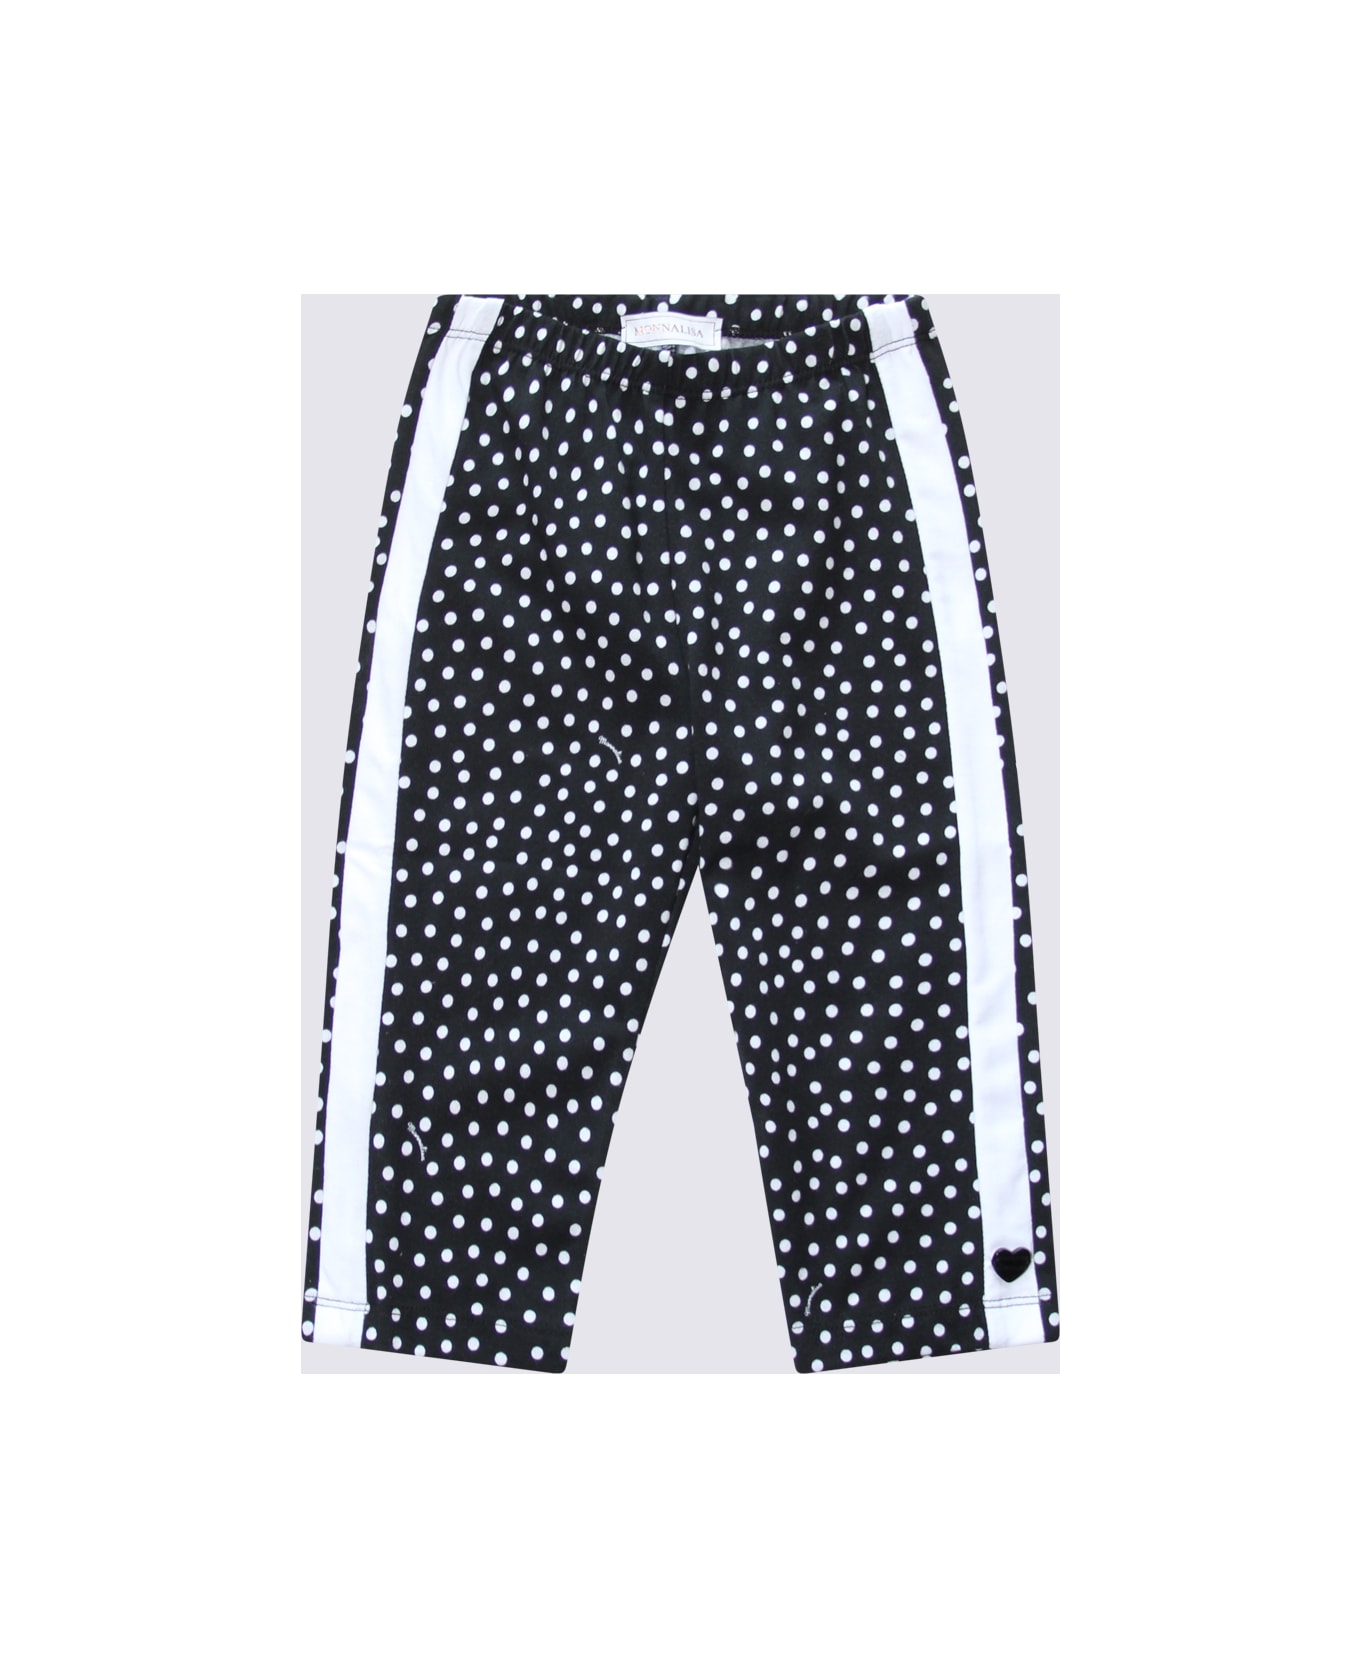 Monnalisa Black And White Cotton Dots Pants - Black